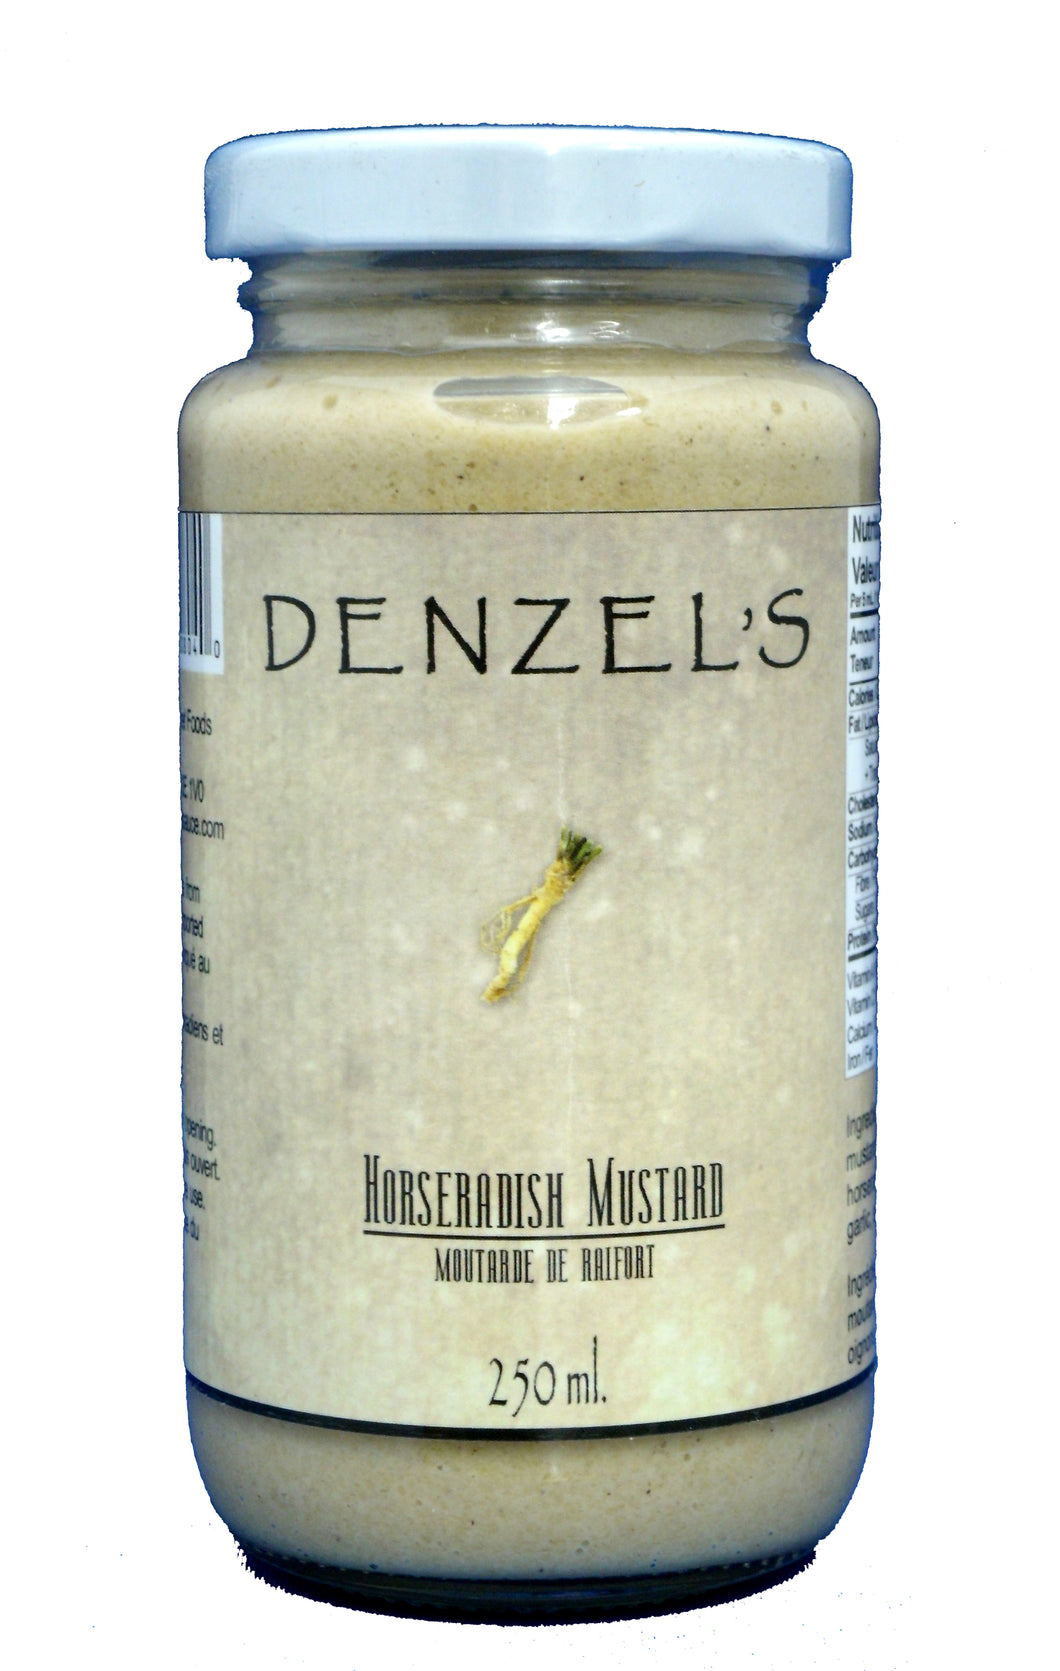 A 250ml jar of Denzel's Horseradish Mustard.